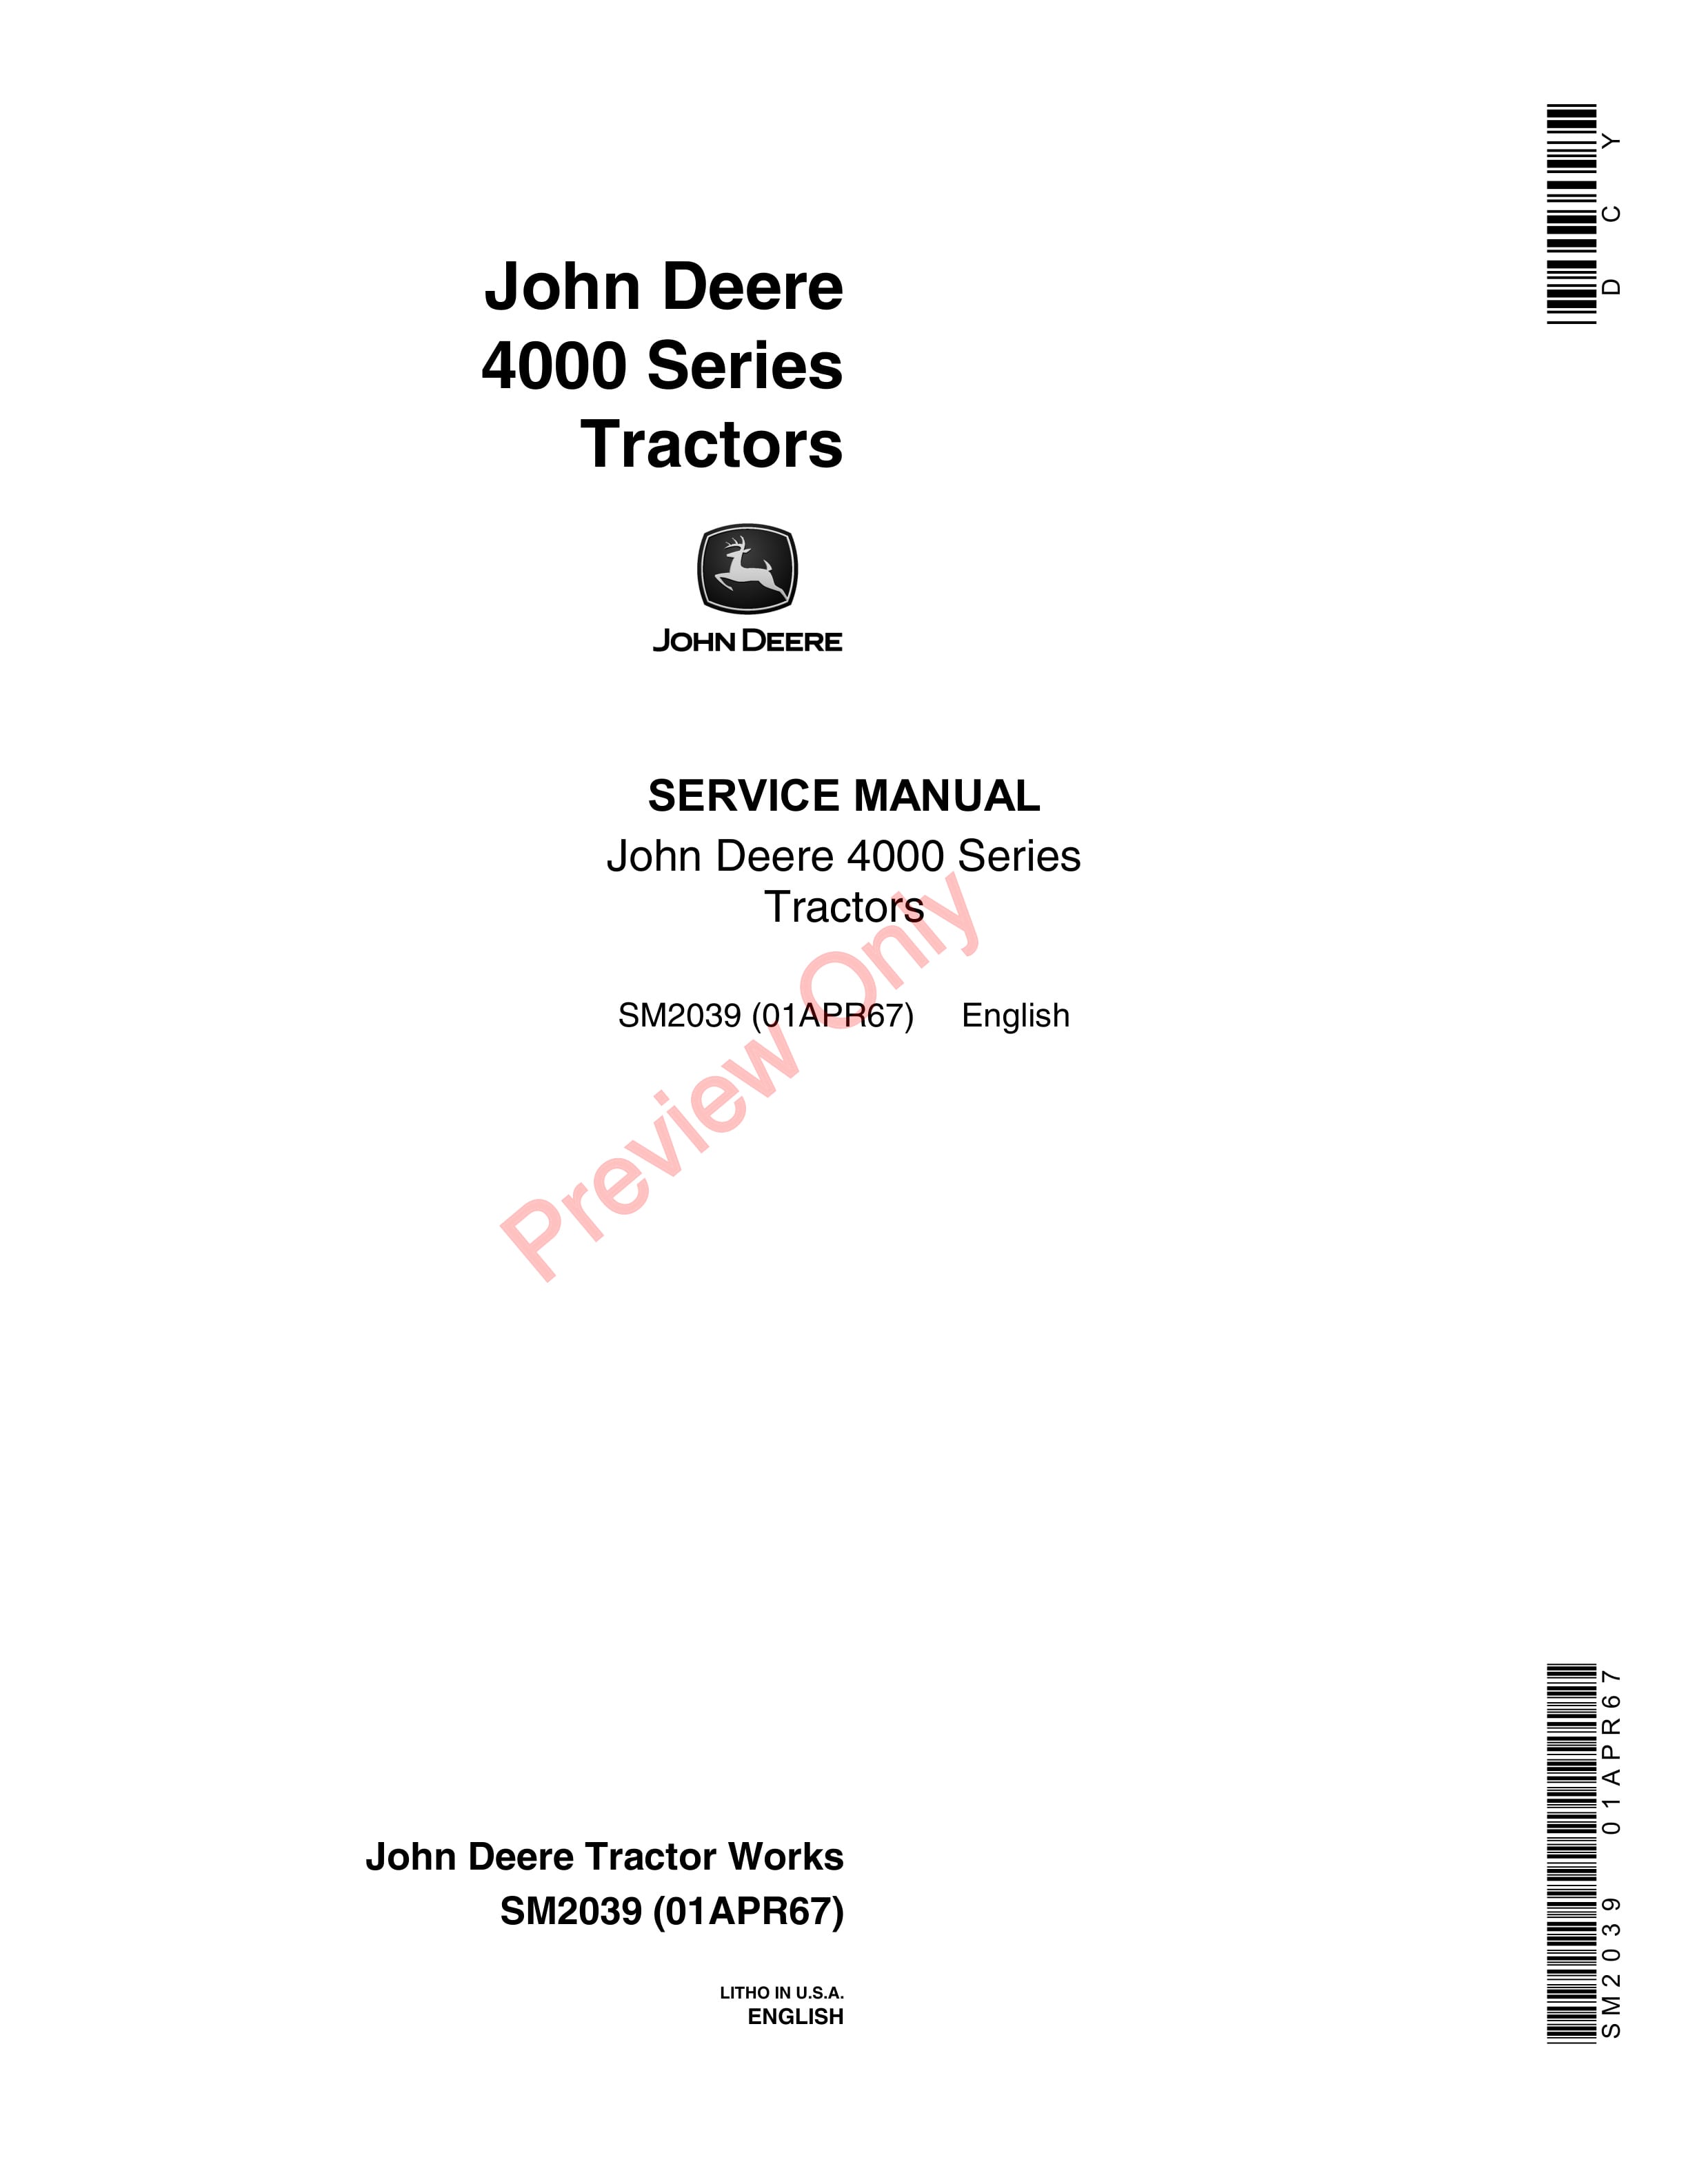 John Deere 4000 Series Tractors Service Manual SM2039 01APR67-1